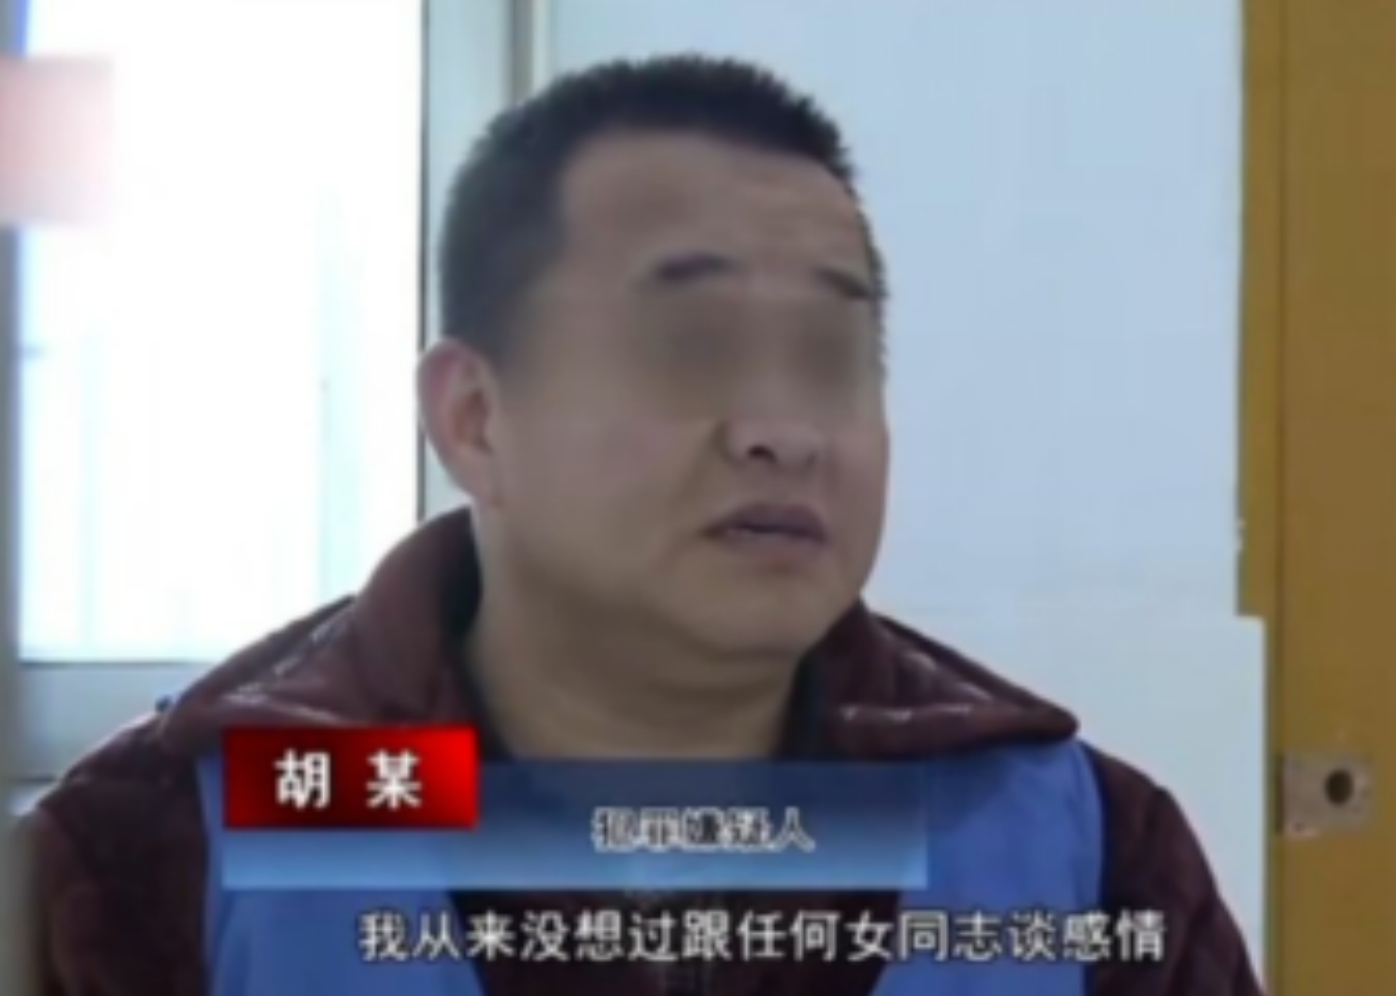 2016年，江苏省男子侵犯100名女性，仅报一名，经警方调查，查明真相。